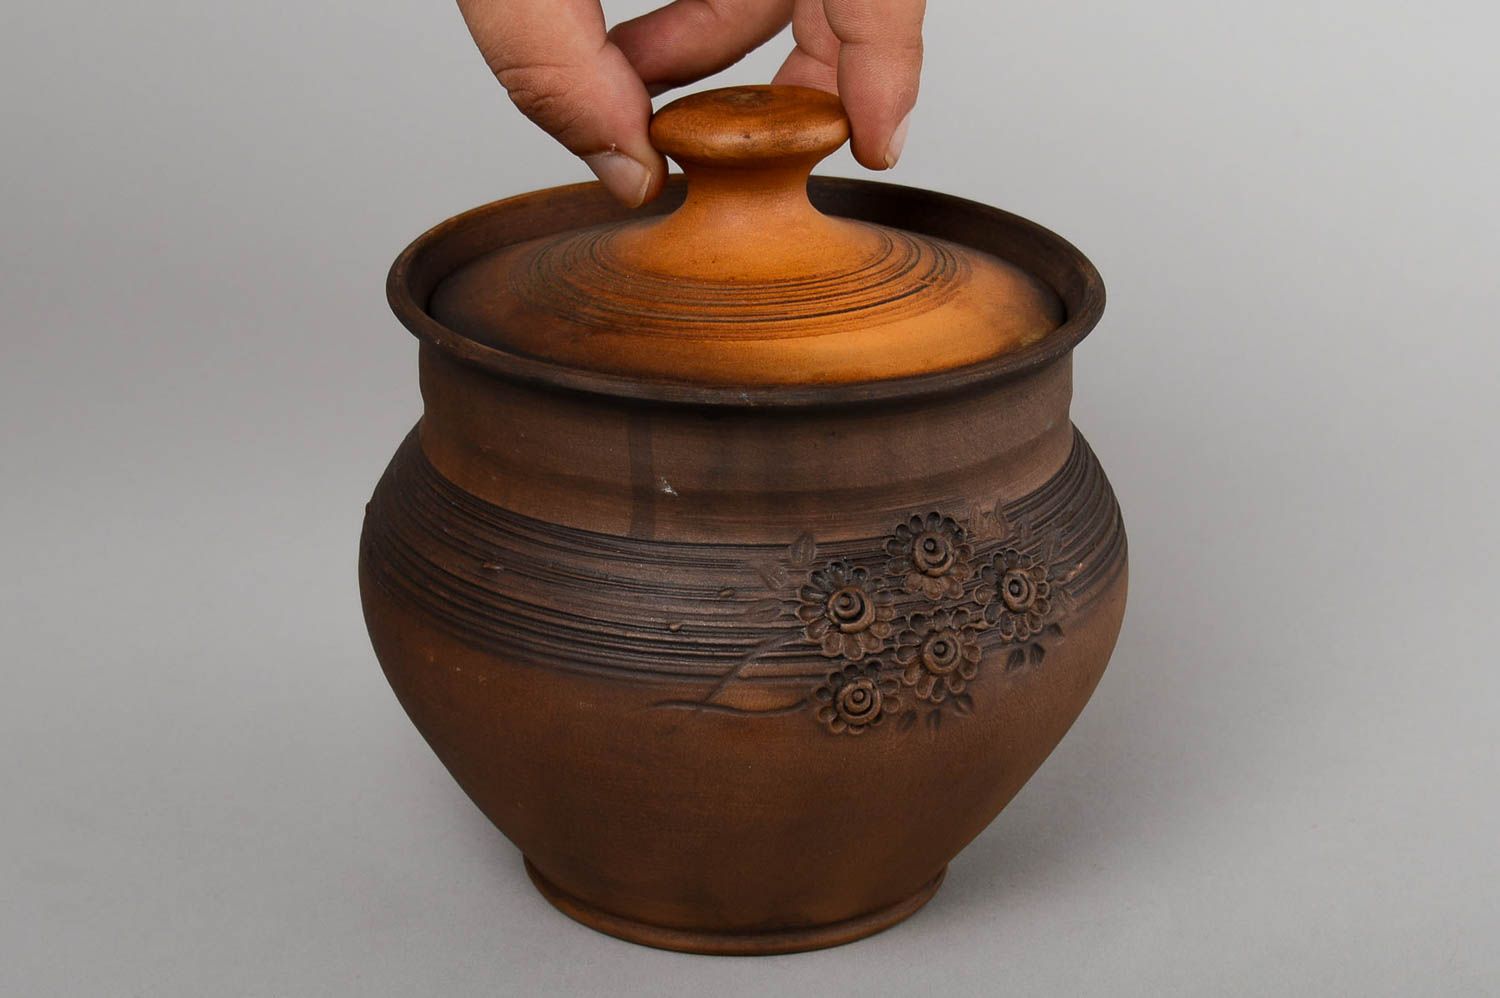 Topf aus Ton handgefertigt Deko für Küche Keramik Geschirr in Braun schön foto 4